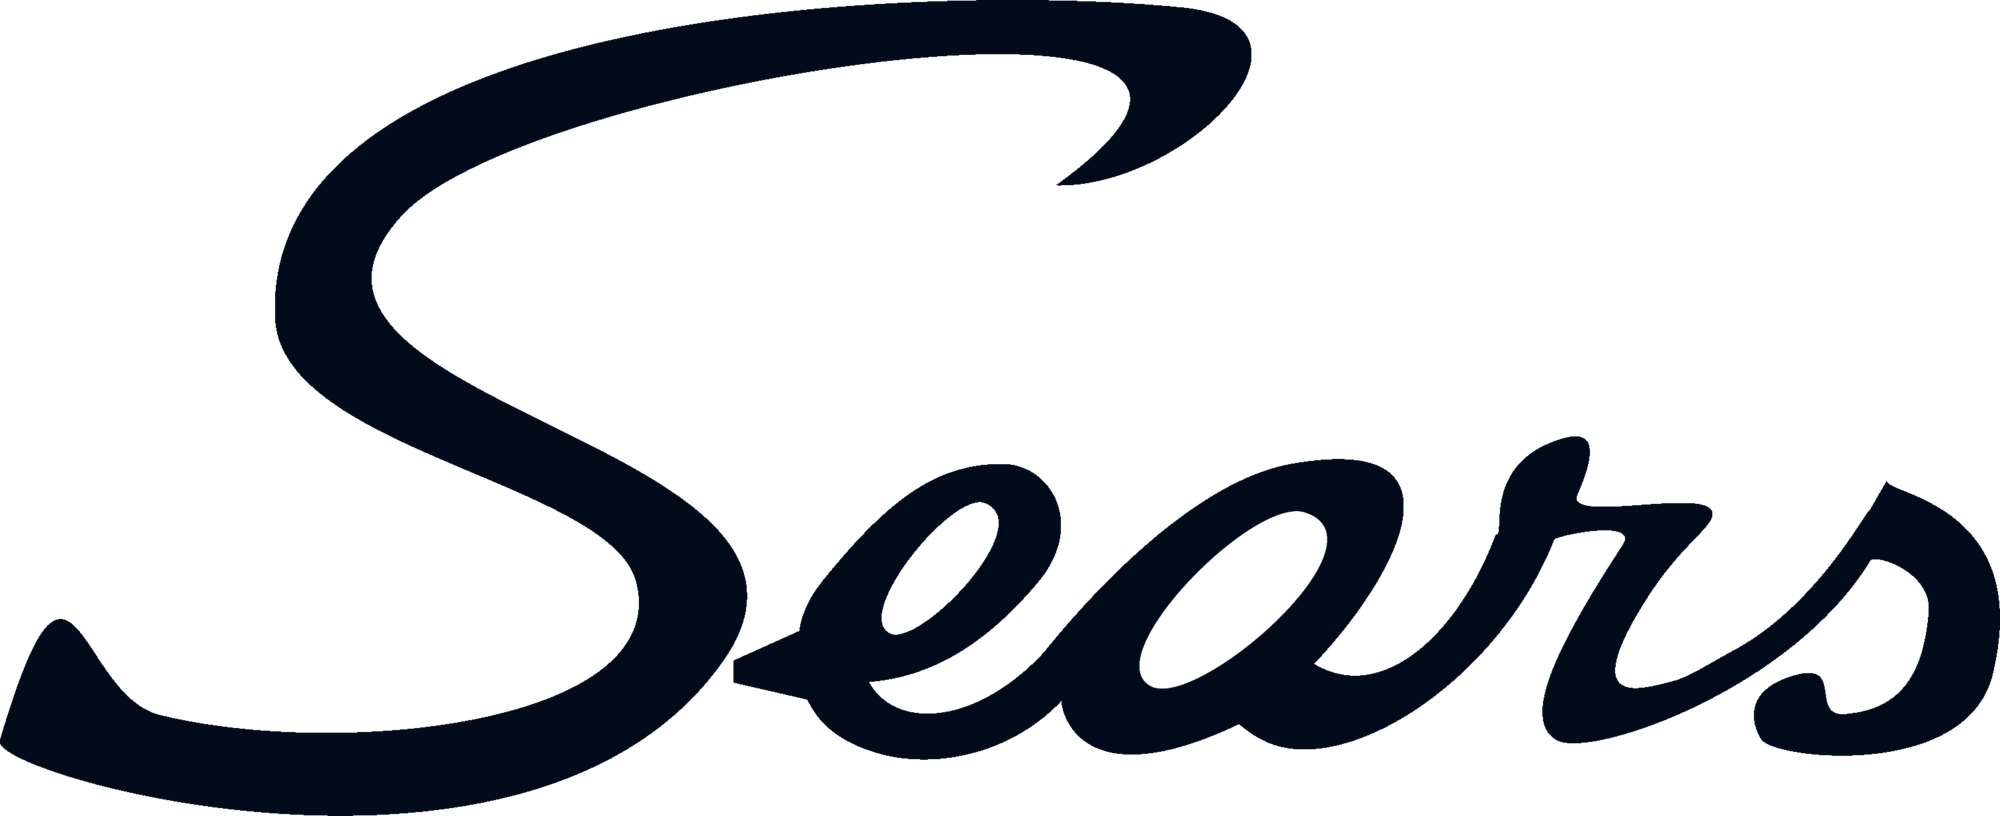 Sears.com Logo - Sears | Logopedia | FANDOM powered by Wikia